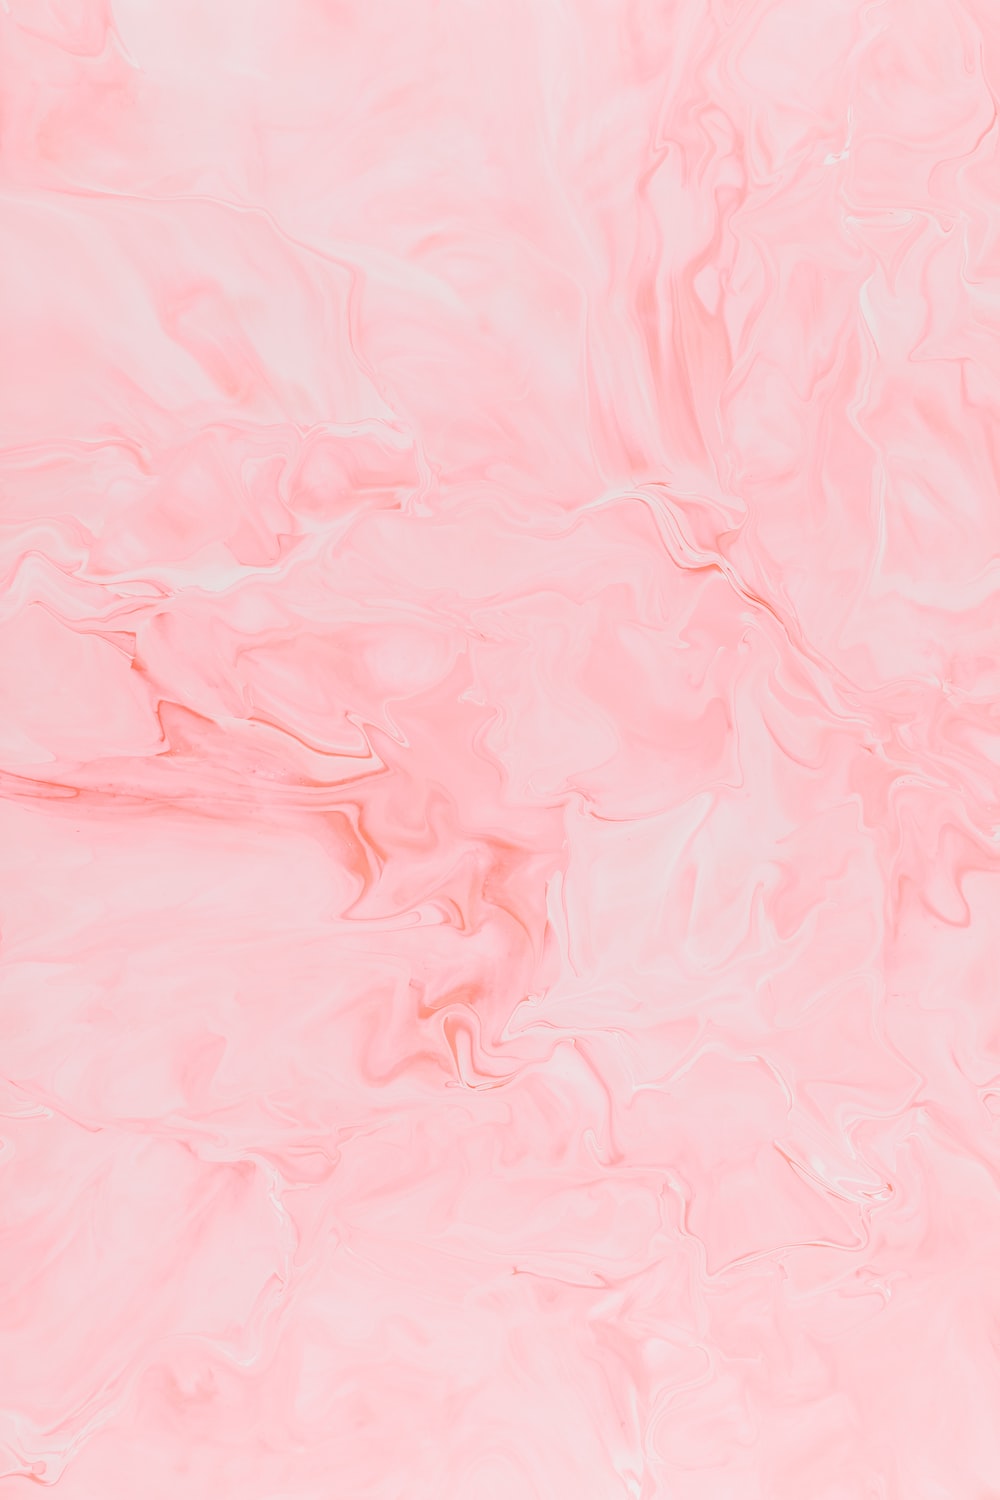 Bạn có đang cần tìm kiếm hình nền màu hồng để làm nền cho máy tính hay điện thoại của mình? Bộ sưu tập hình nền màu hồng miễn phí của chúng tôi sẽ khiến bạn phải mãn nhãn với những tông màu đầy nữ tính và tươi sáng.